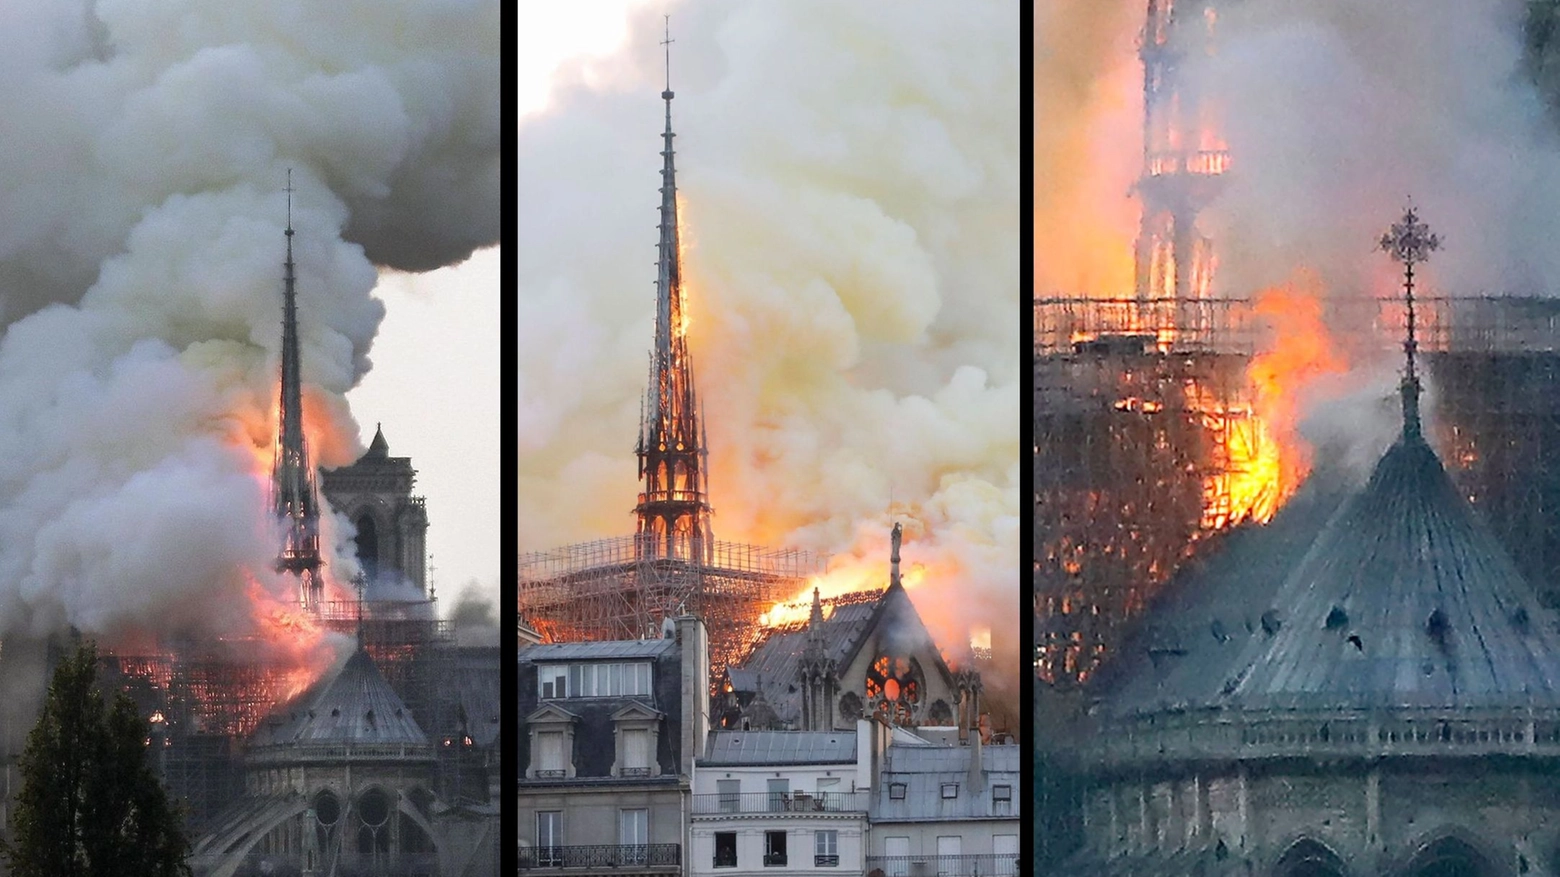 Incendio a Notre Dame, brucia la cattedrale